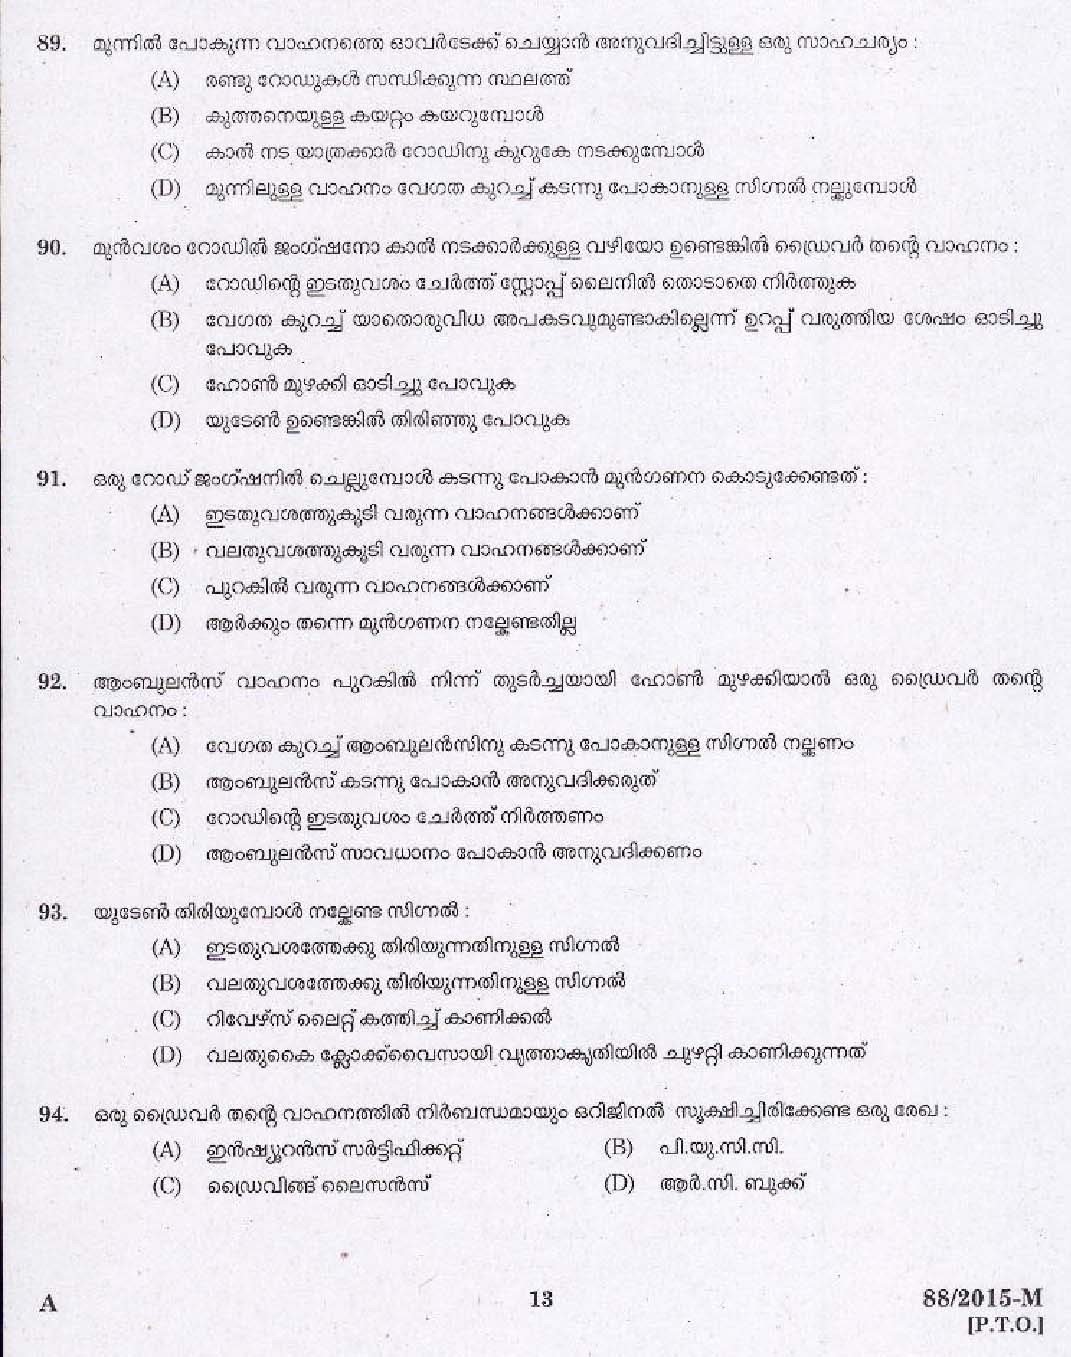 Kerala PSC Driver Grade II Exam 2015 Question Paper Code 882015 M 11